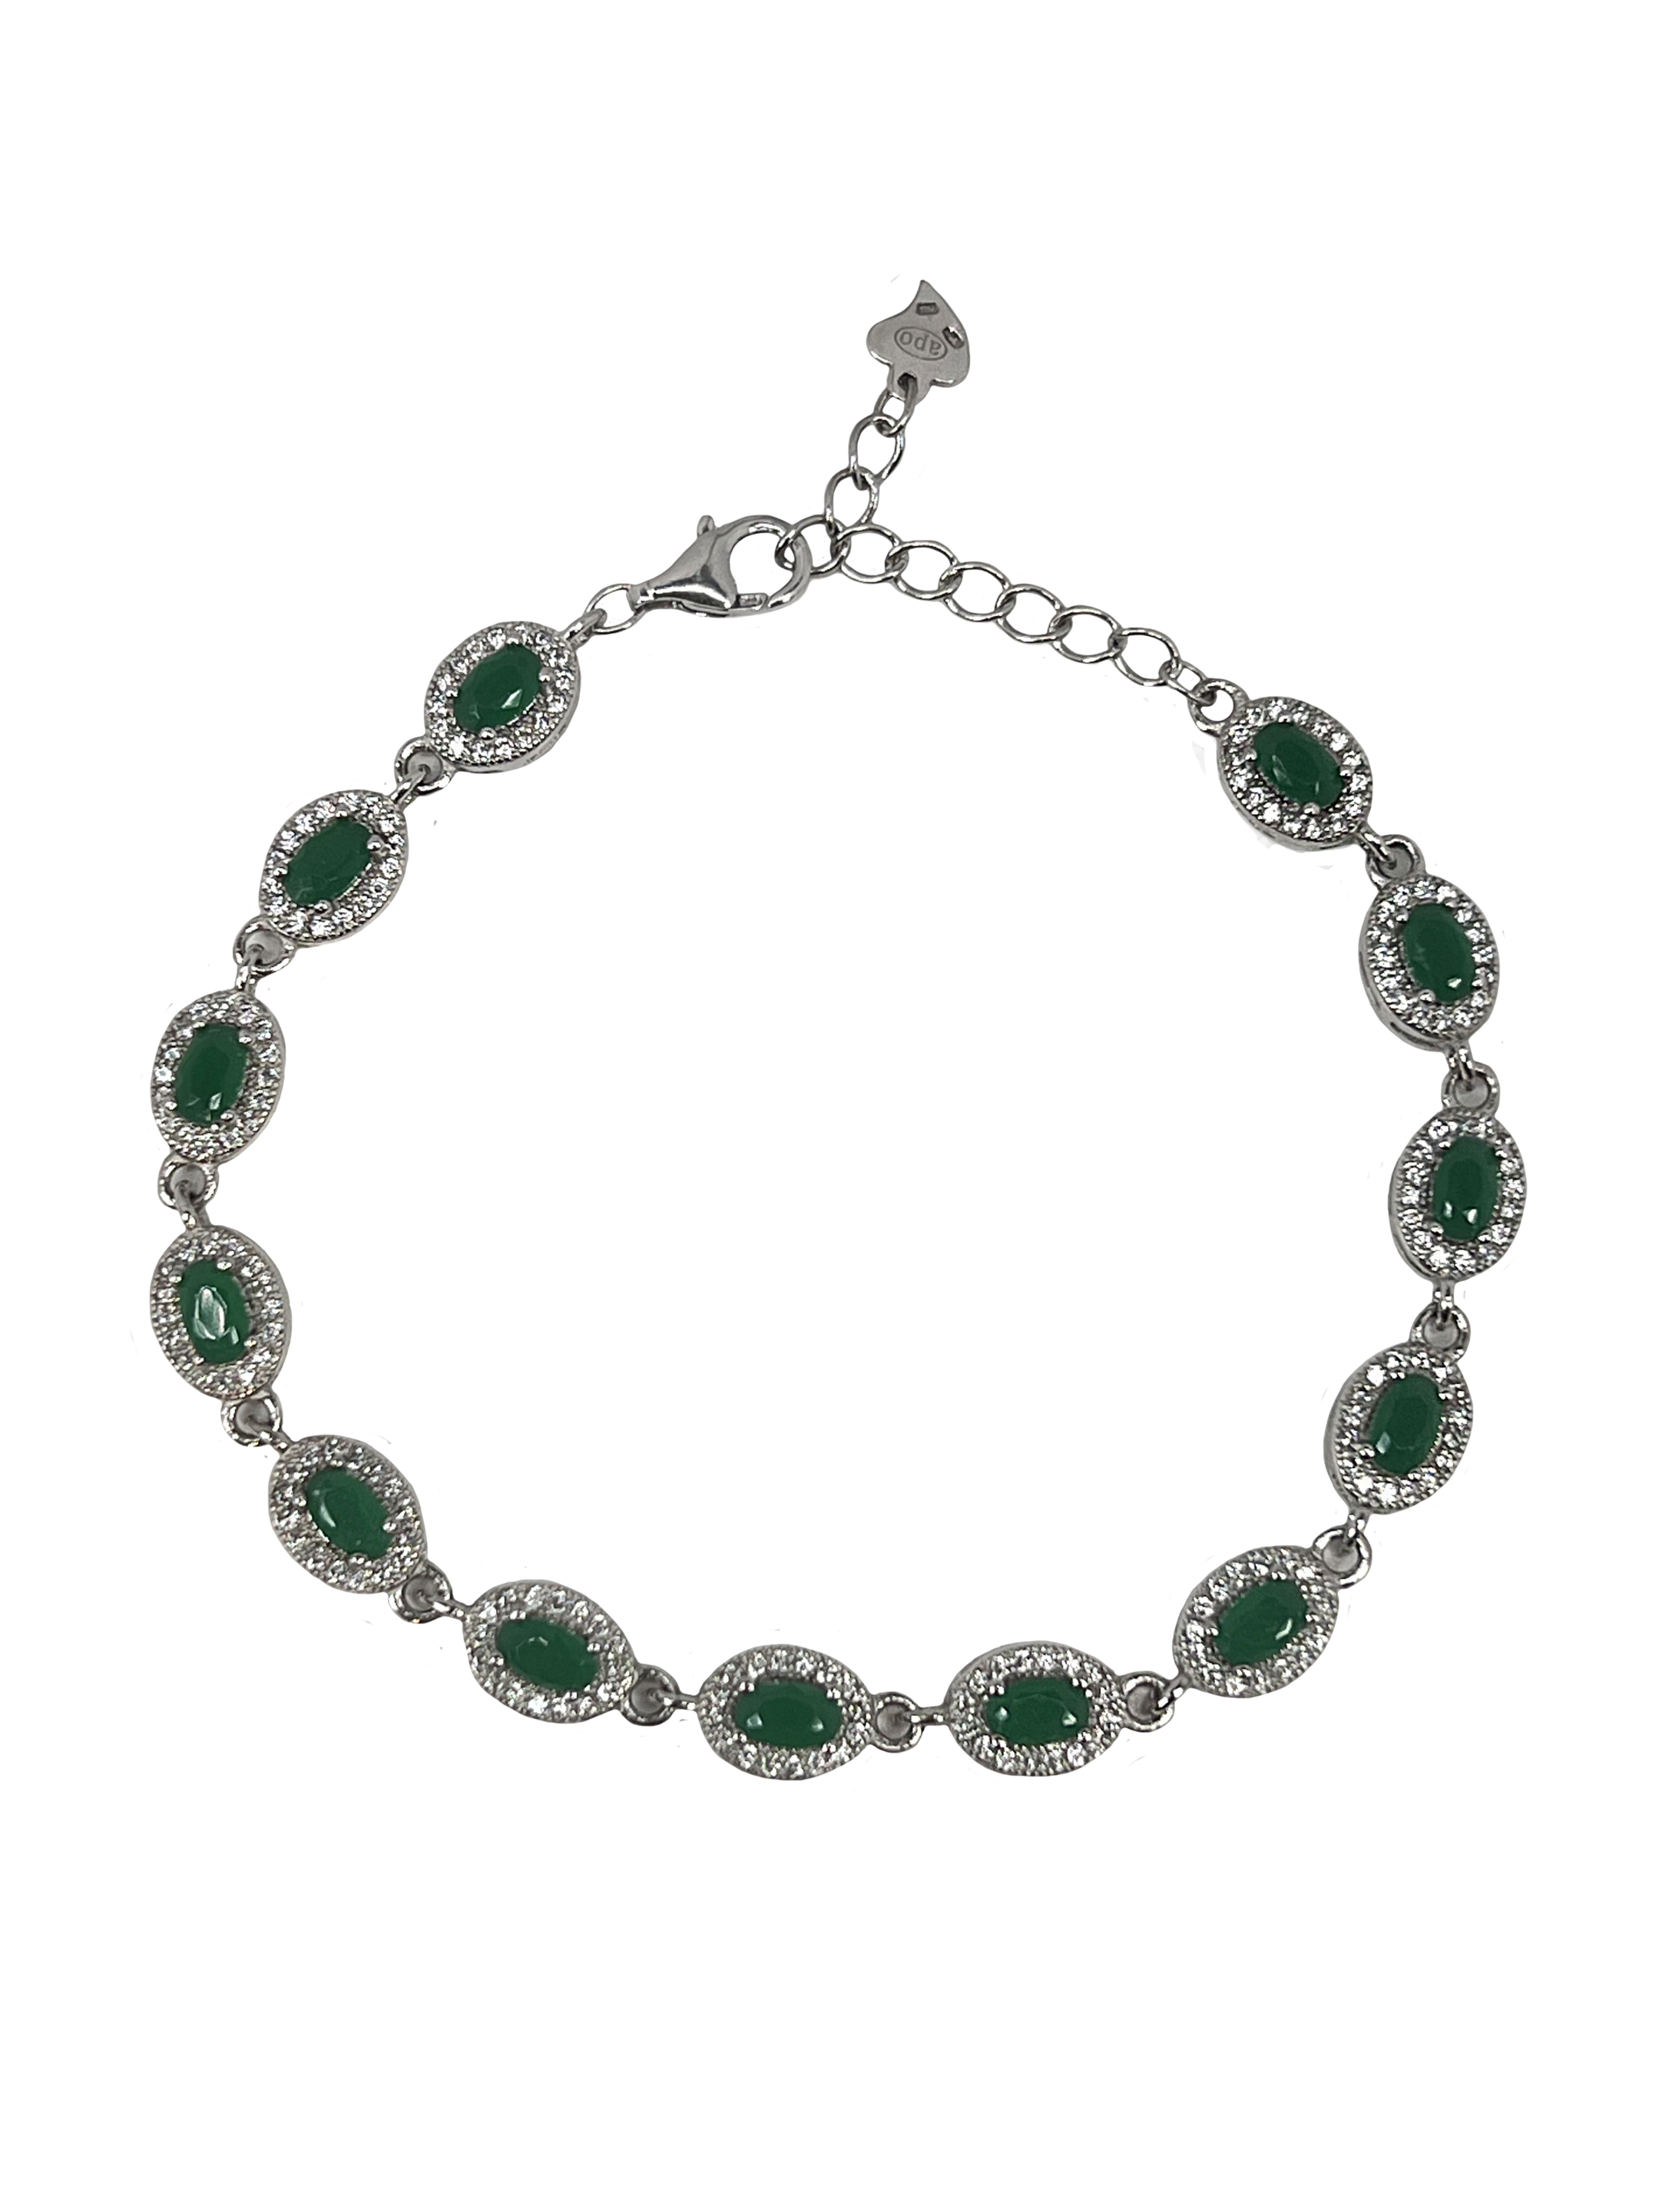 Bracelet en argent avec cristaux et pierres vertes